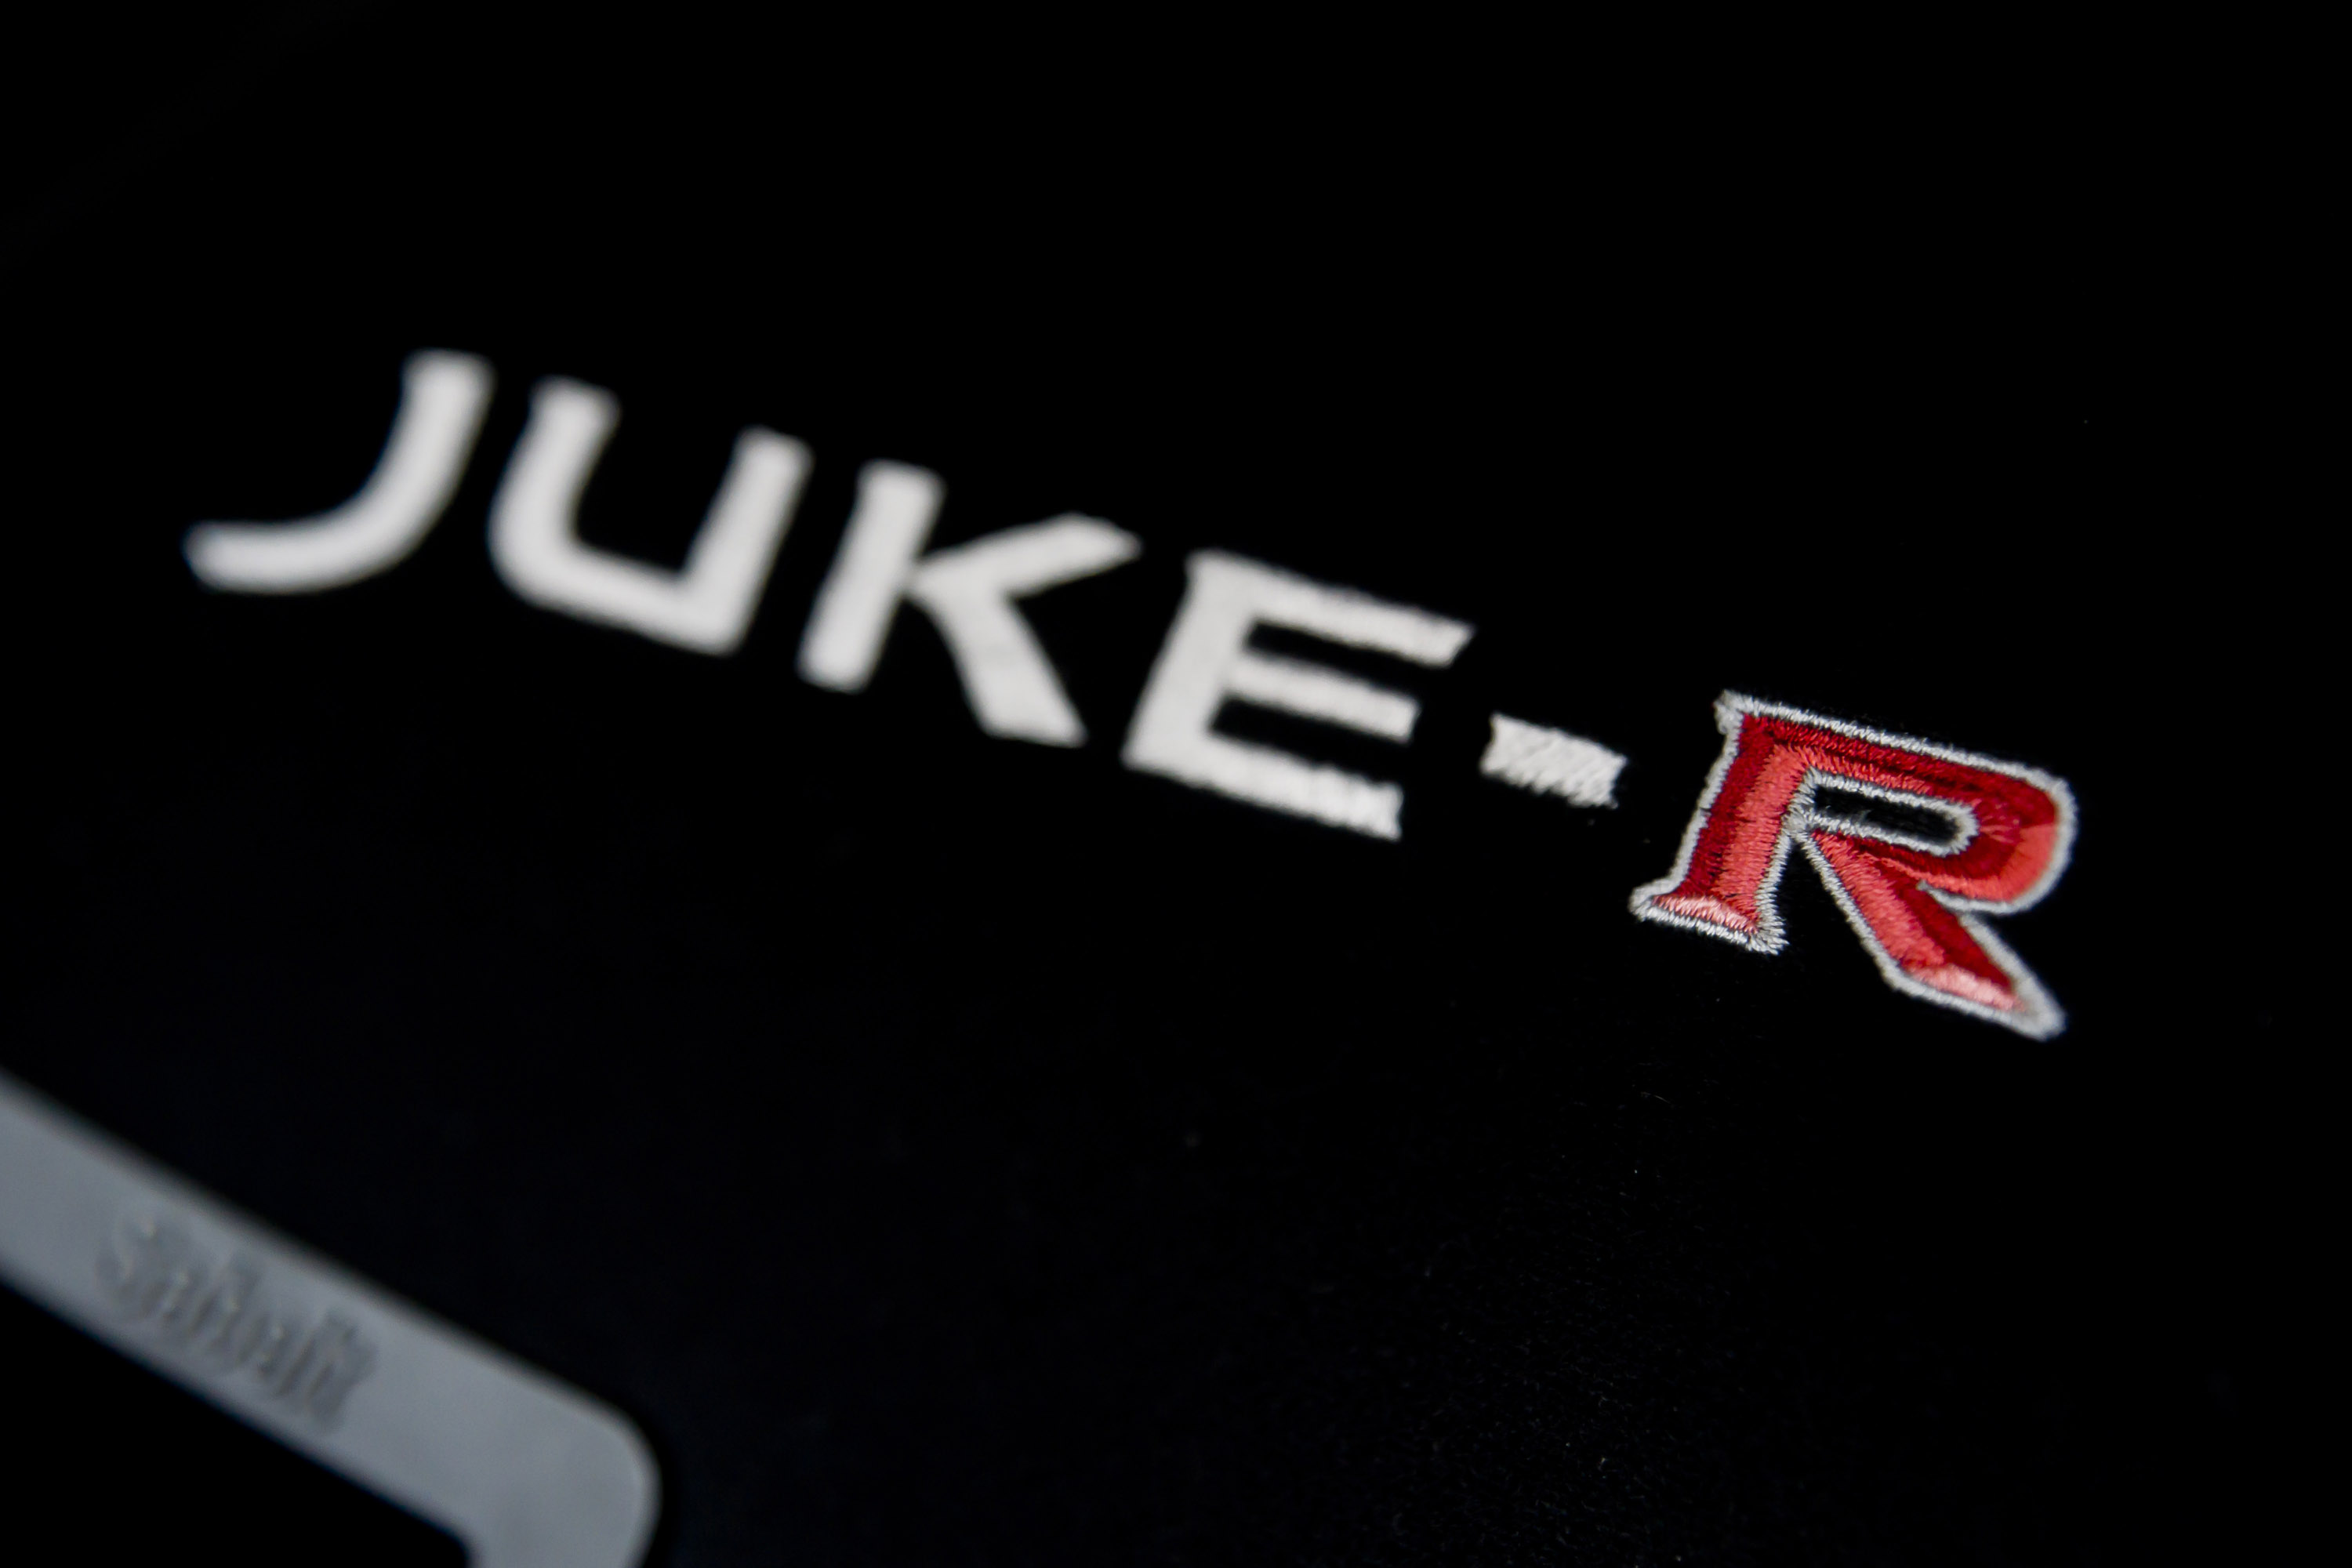 Nissan Juke-R #001